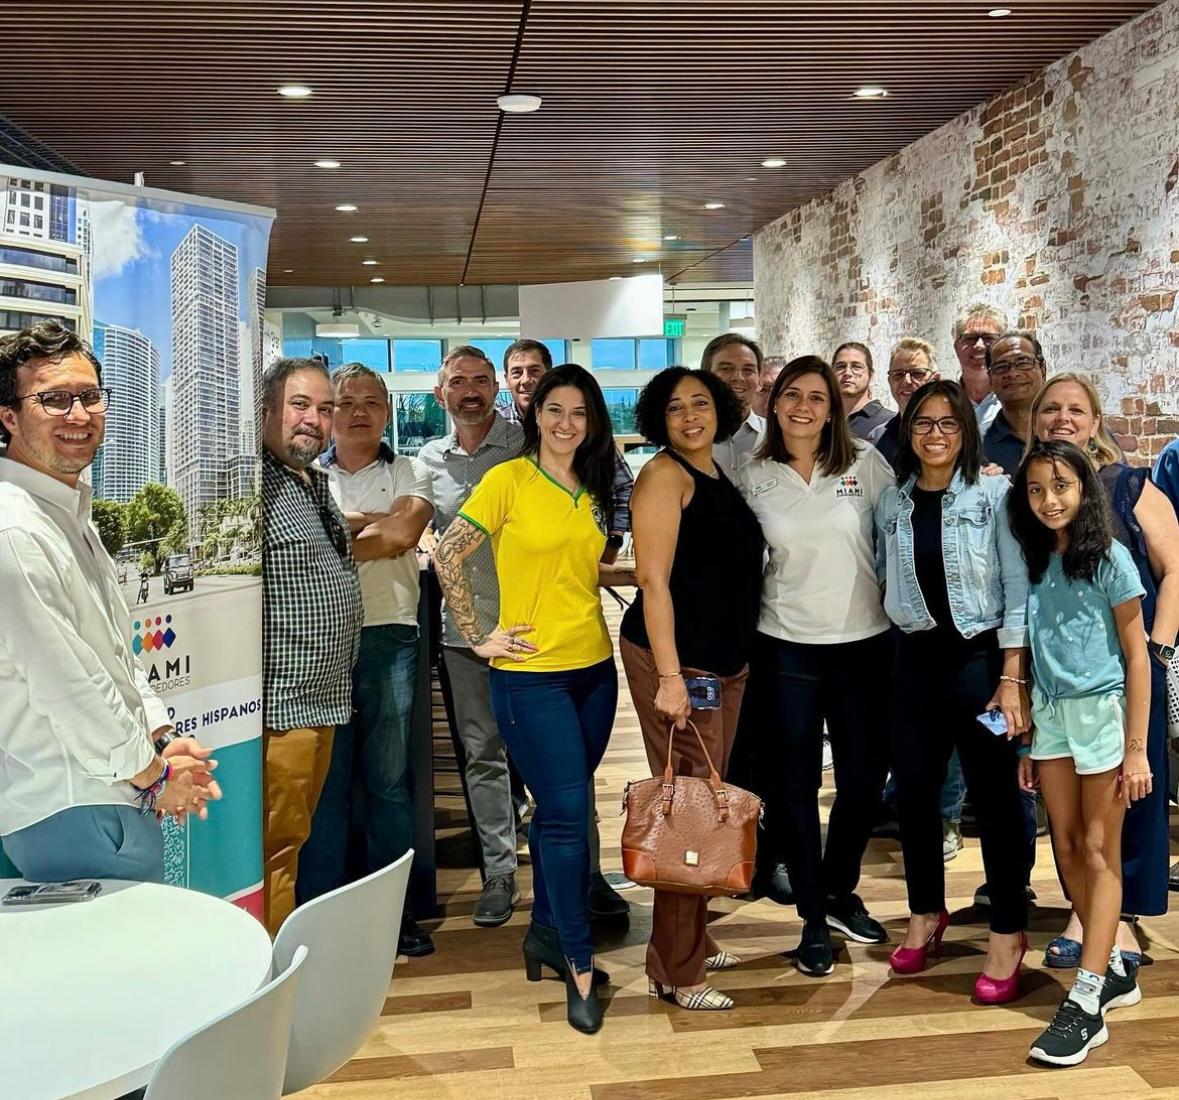 Miami Emprendedores celebró el mes de la Herencia Hispana en grande con su participación en el TechXchange Tuesday